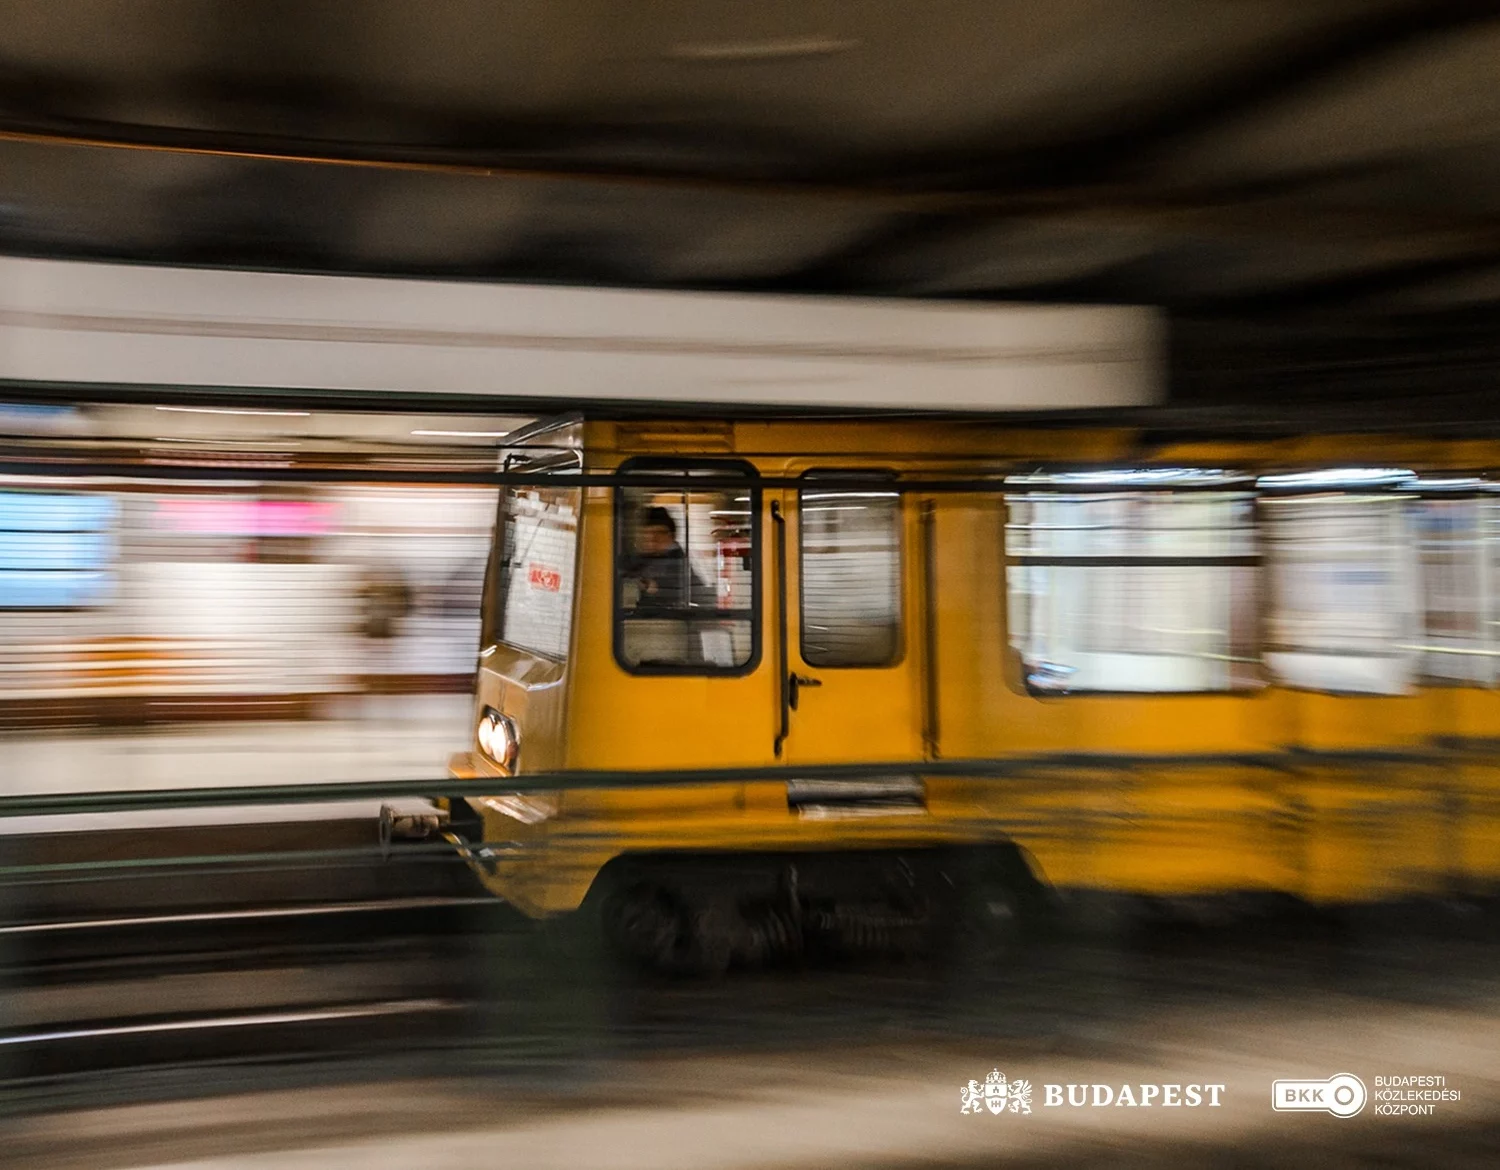 Elképesztő siker: a CNN a budapesti metróvonalat választotta a világ legjobbjának